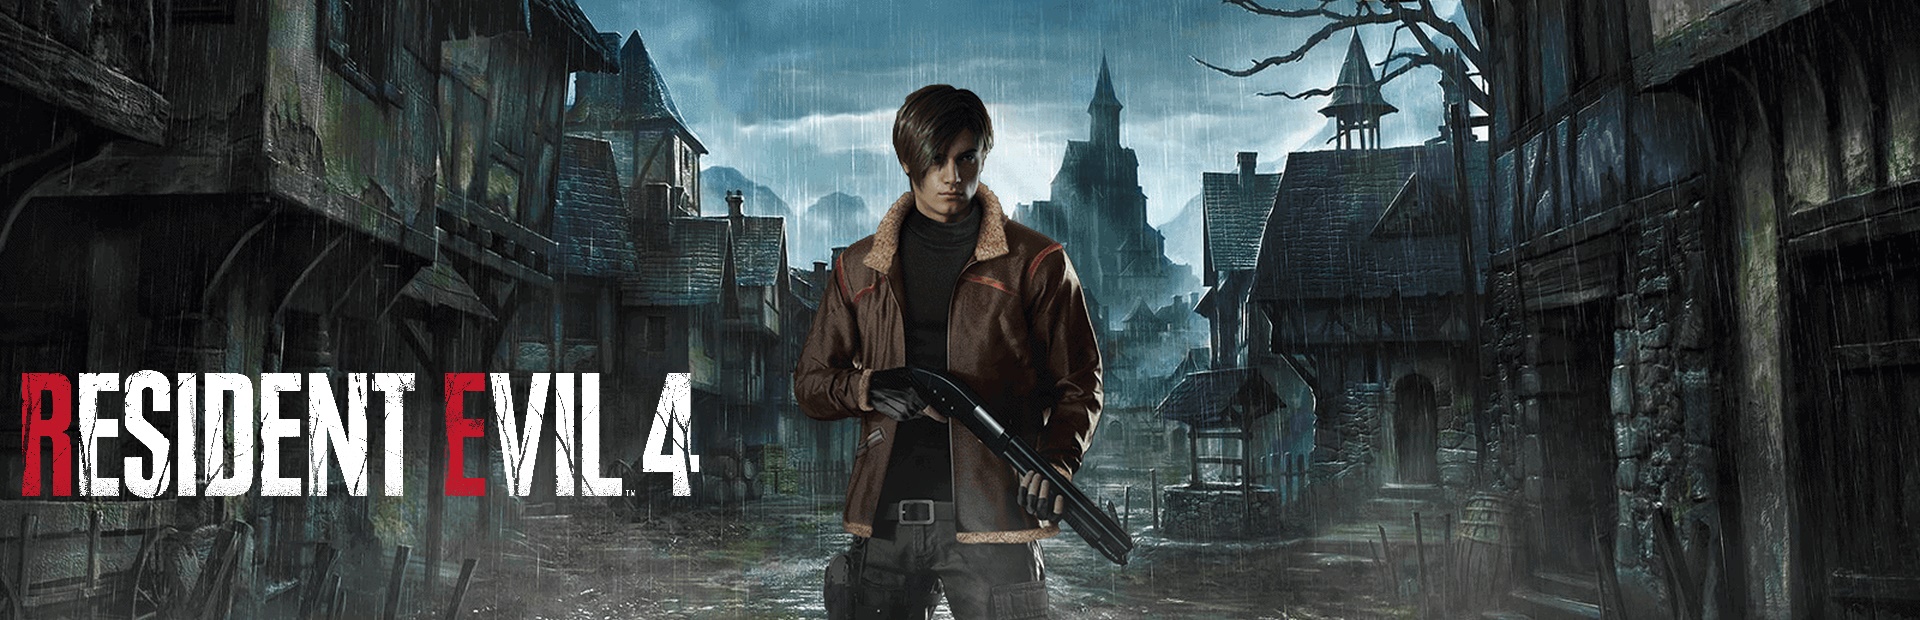 دانلود بازی Resident Evil 4 برای PC | گیمباتو